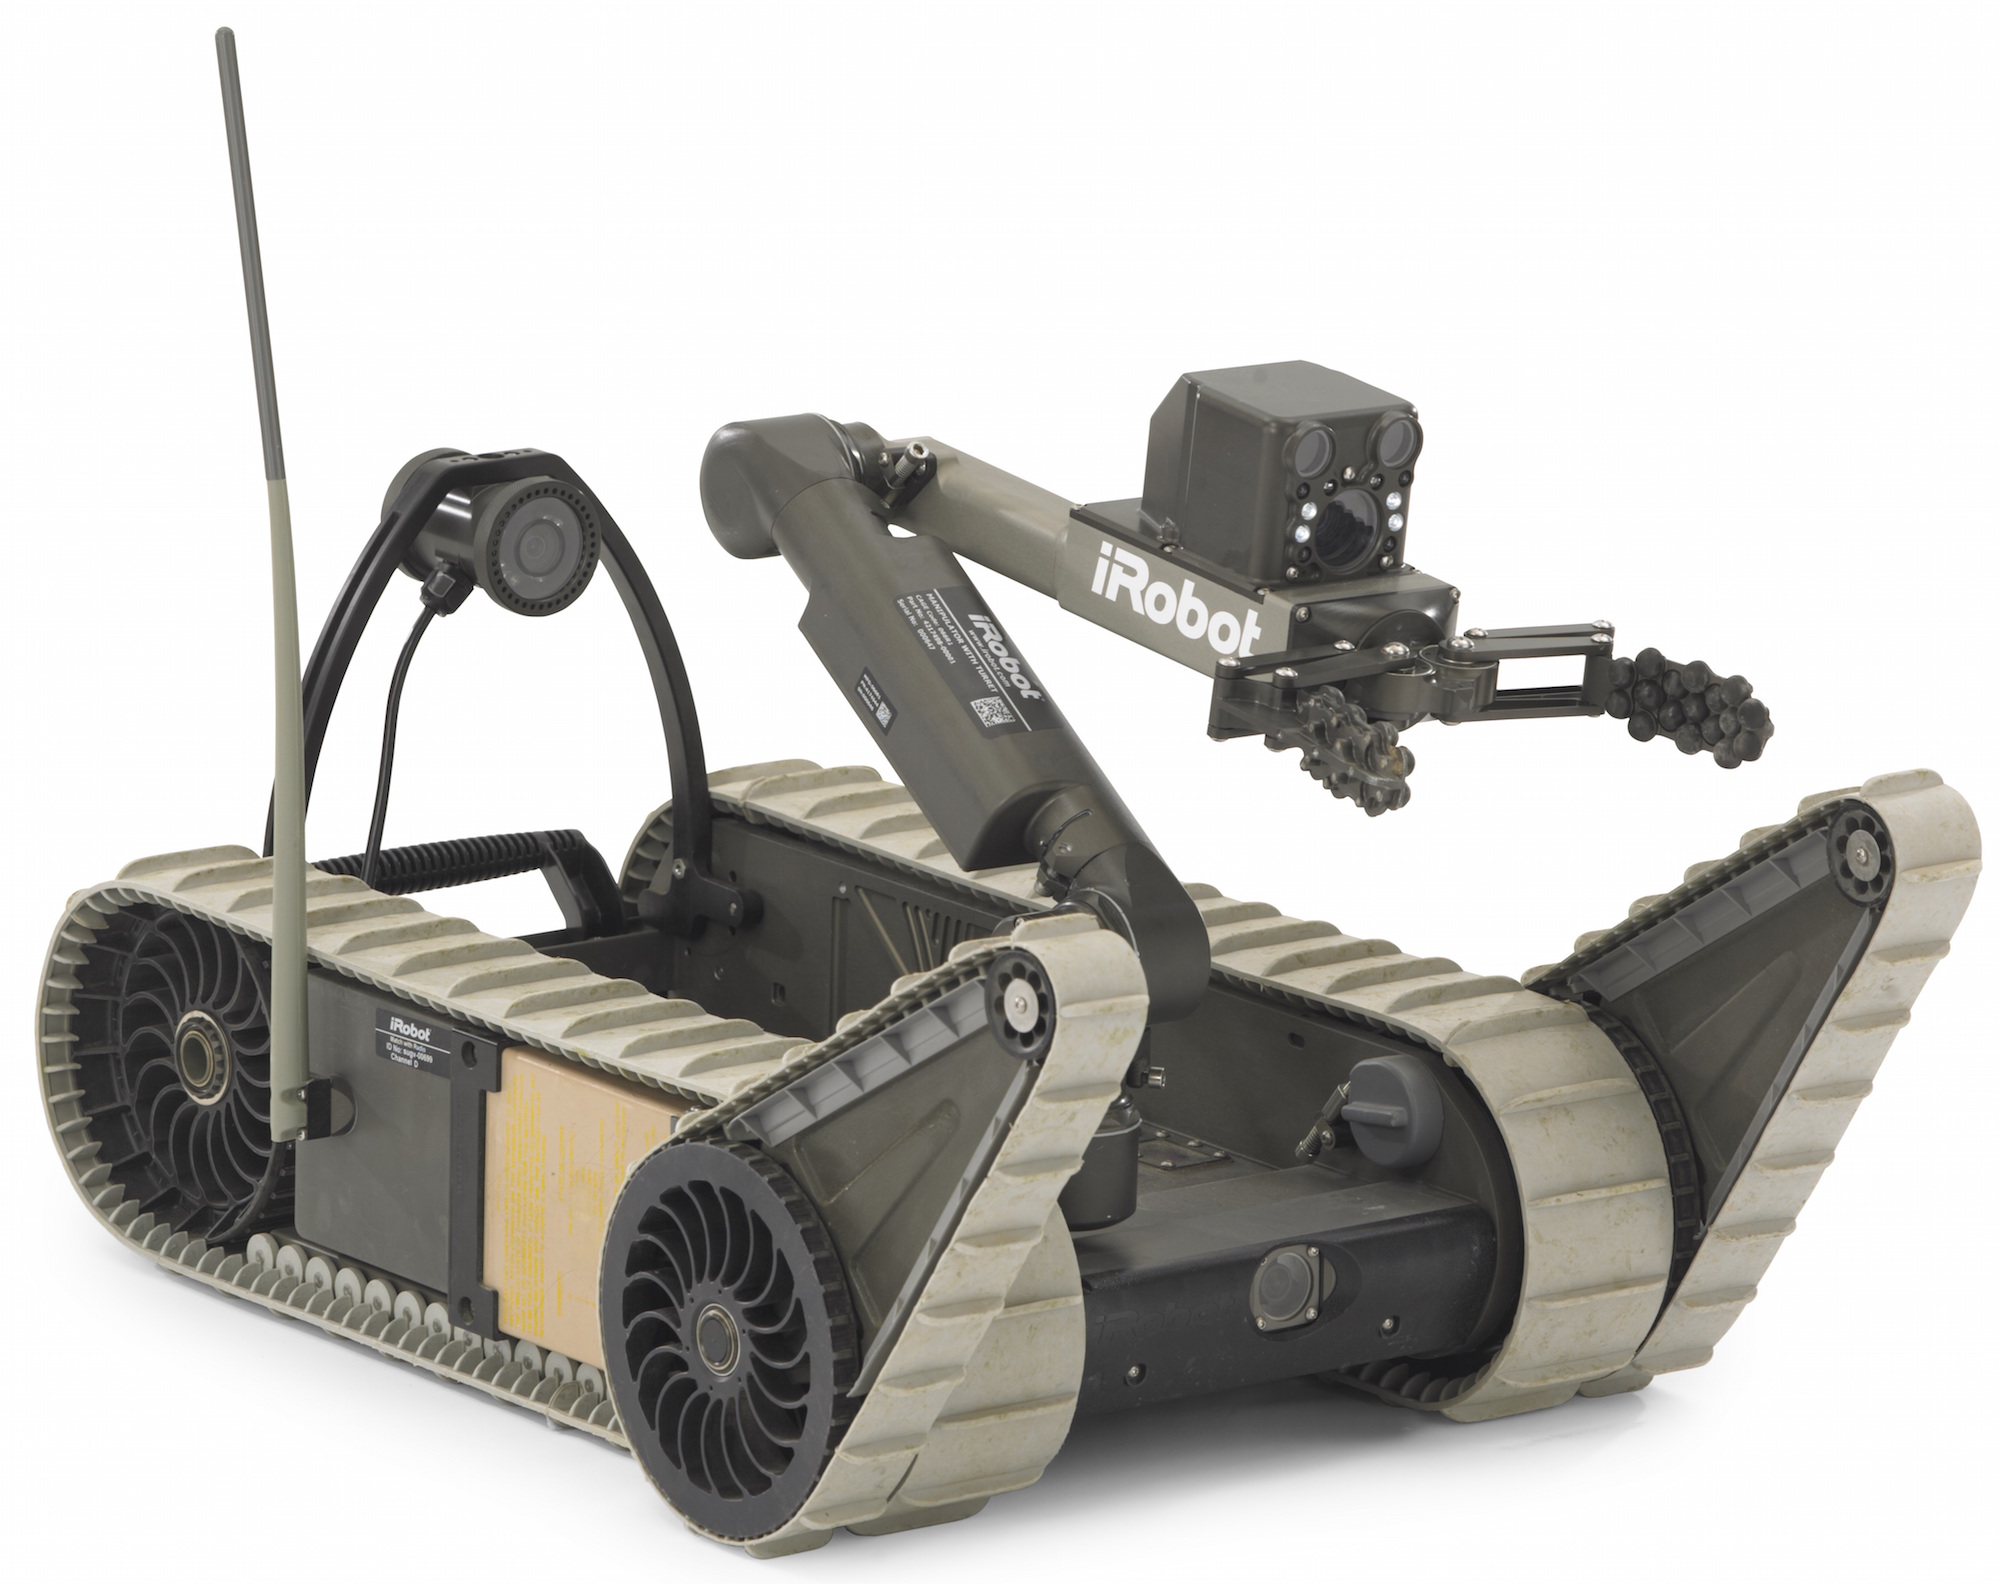 Шагающие устройства. IROBOT SUGV. 110 Firstlook робот. Военные роботы IROBOT. Робот сапер Варан.